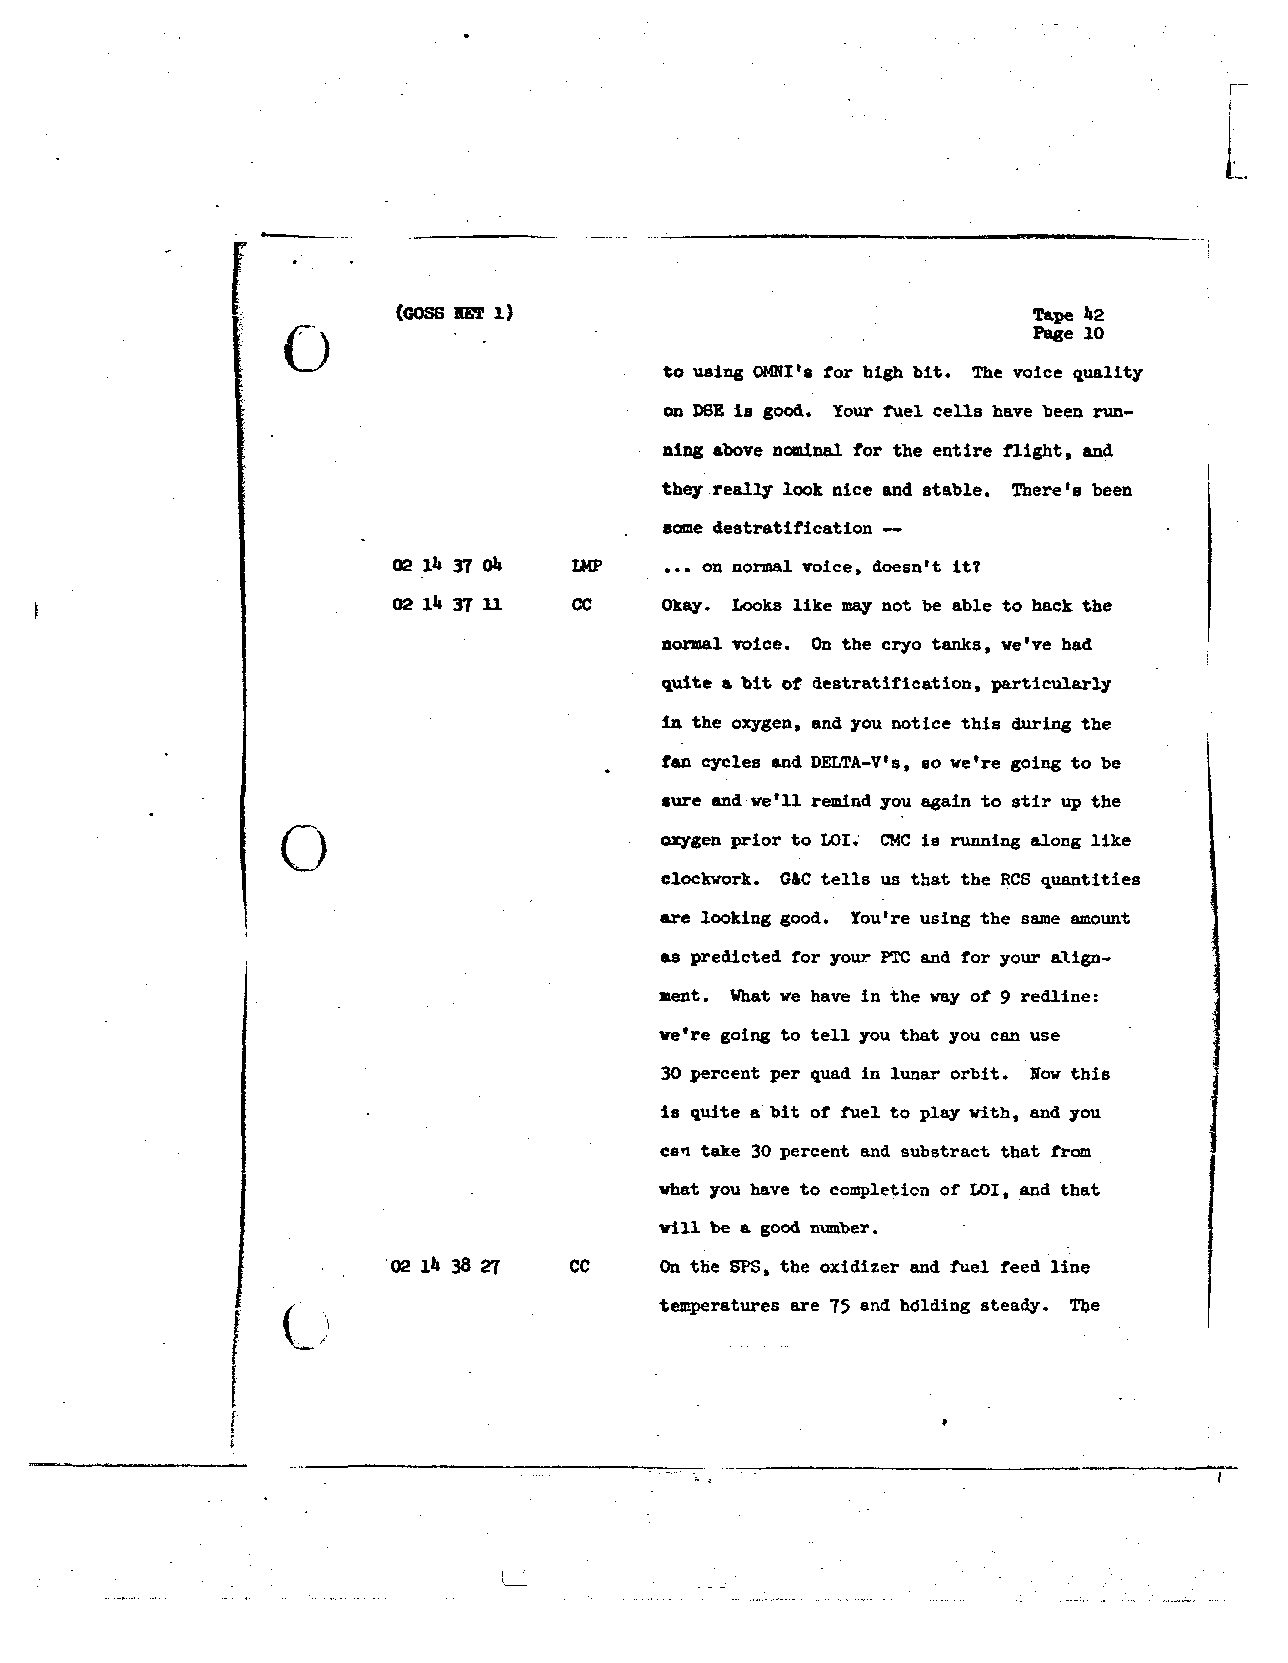 Page 332 of Apollo 8’s original transcript